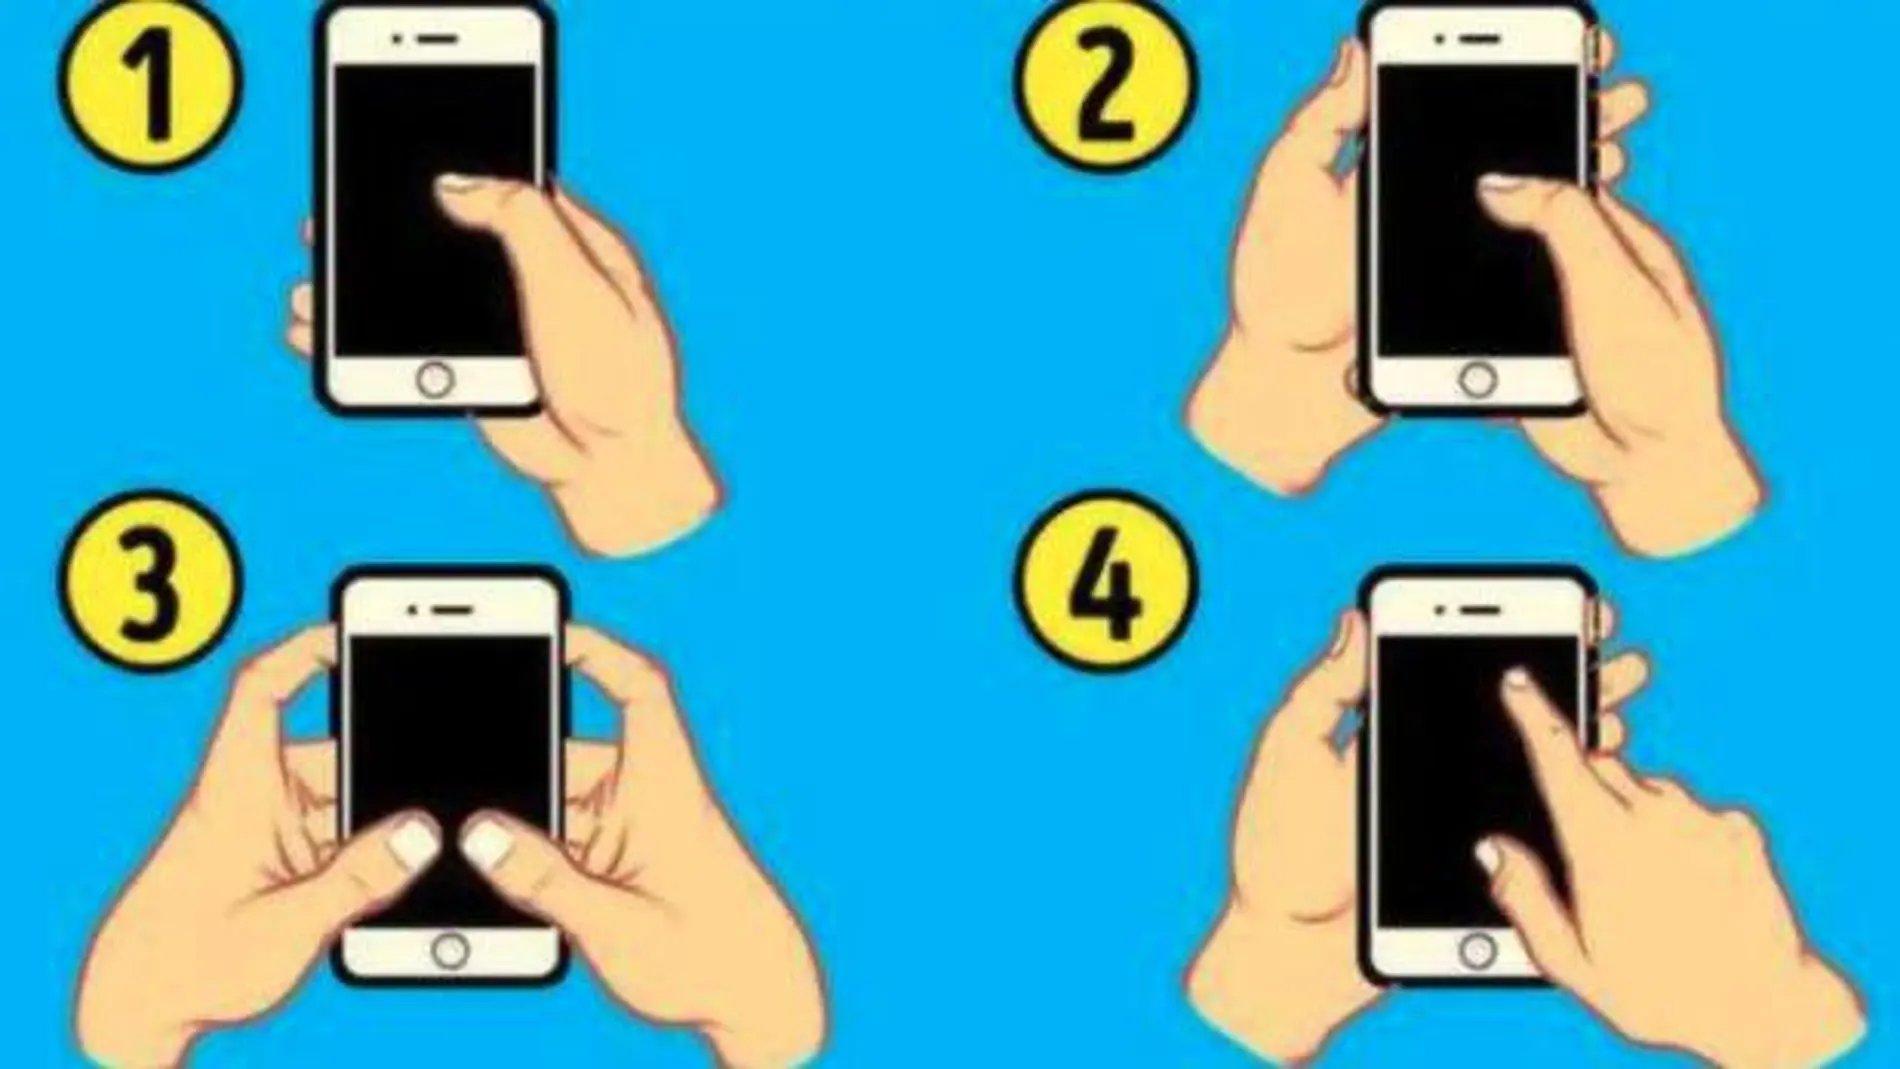 Cuatro formas distintas de sujetar un móvil.